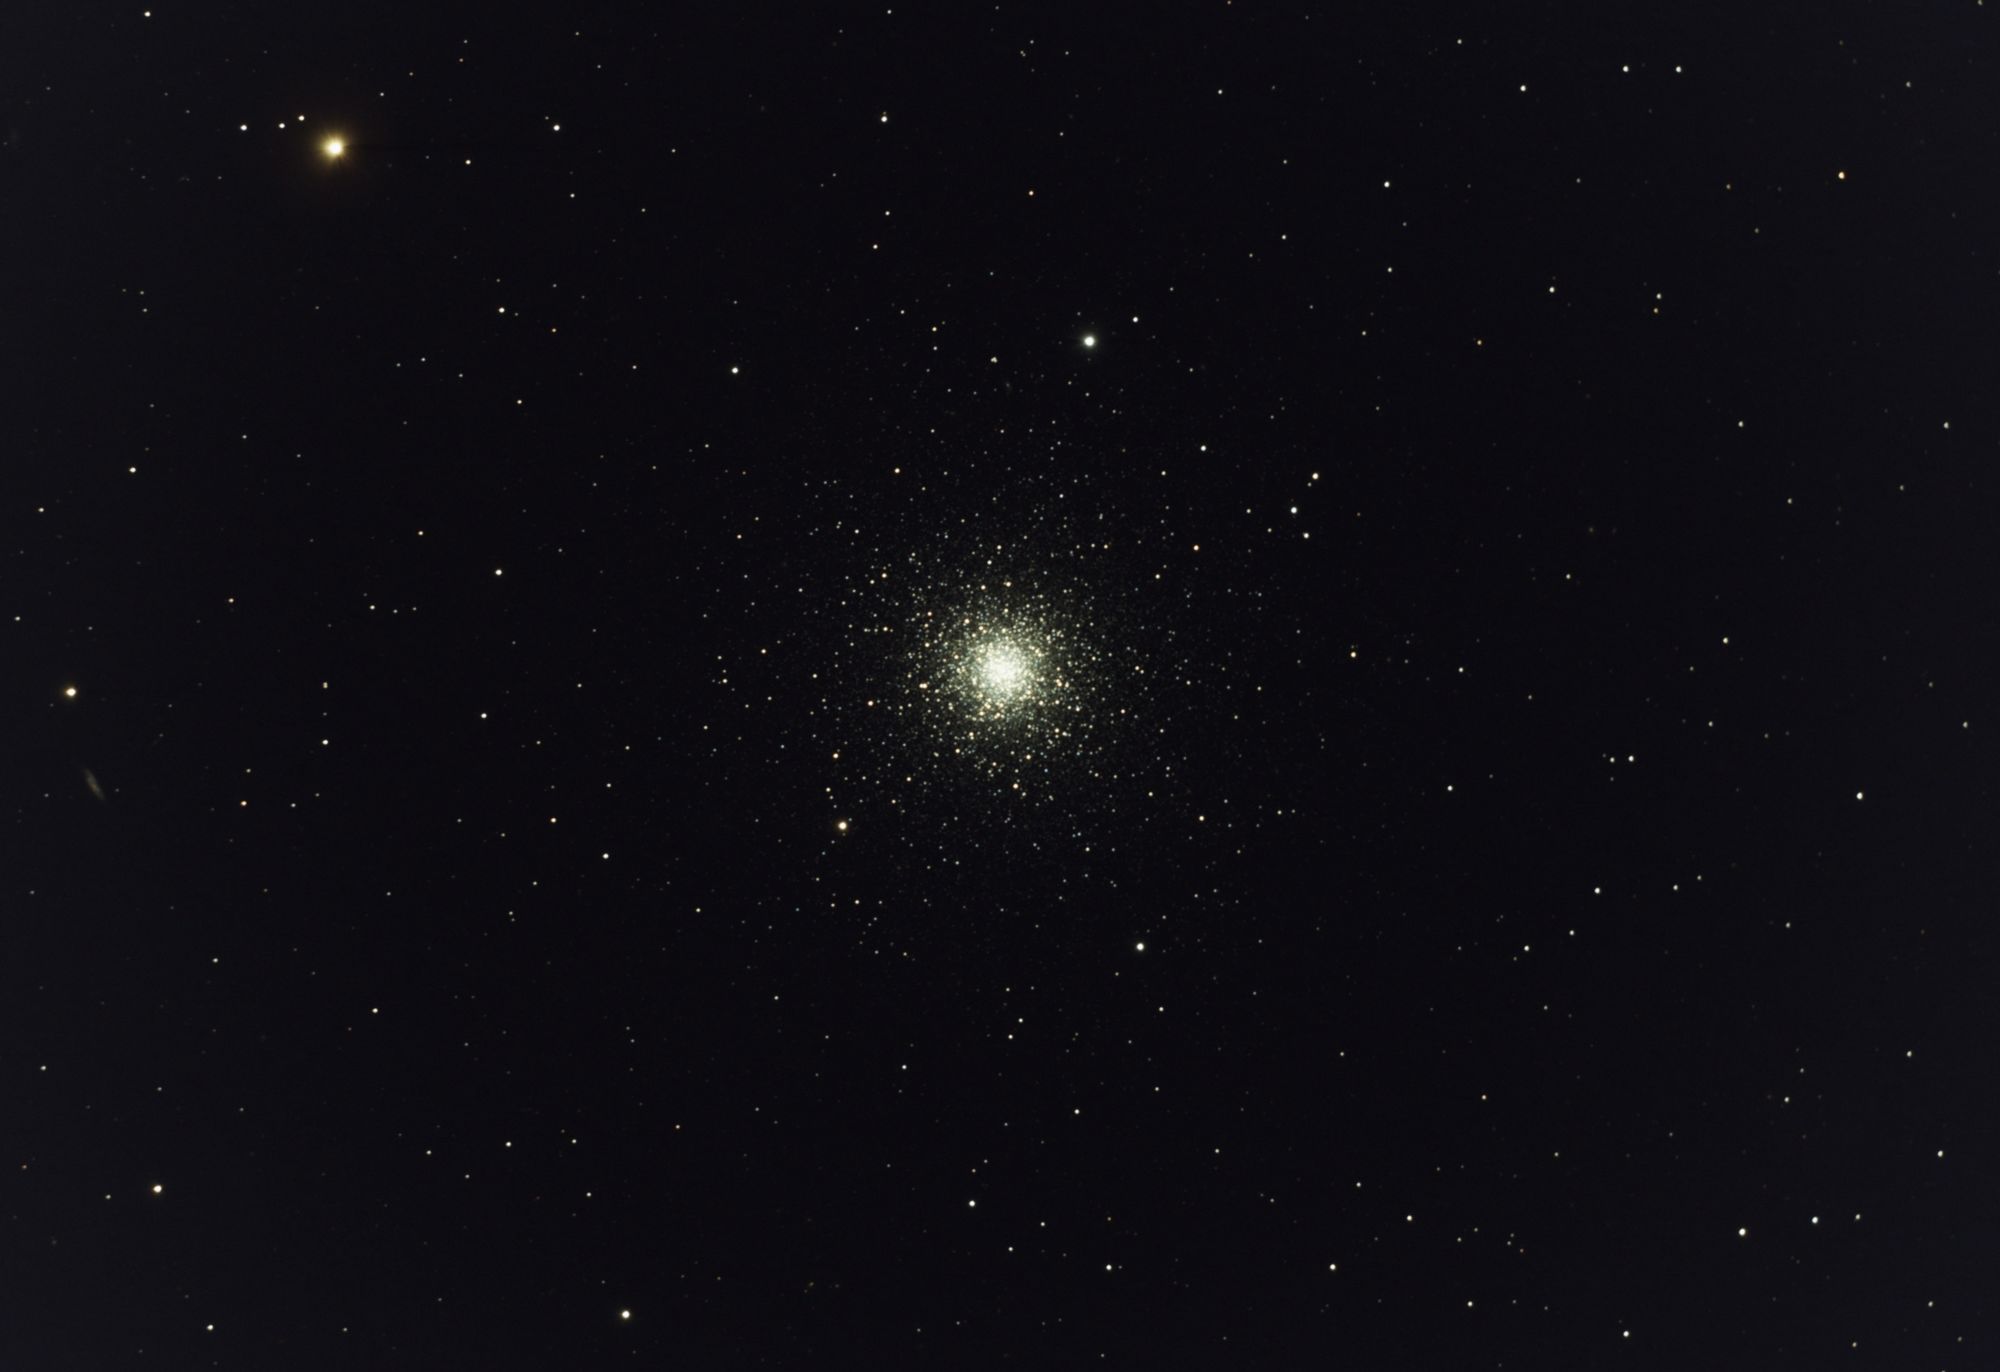 M3 - Globular Star Cluster in Canes Venatici